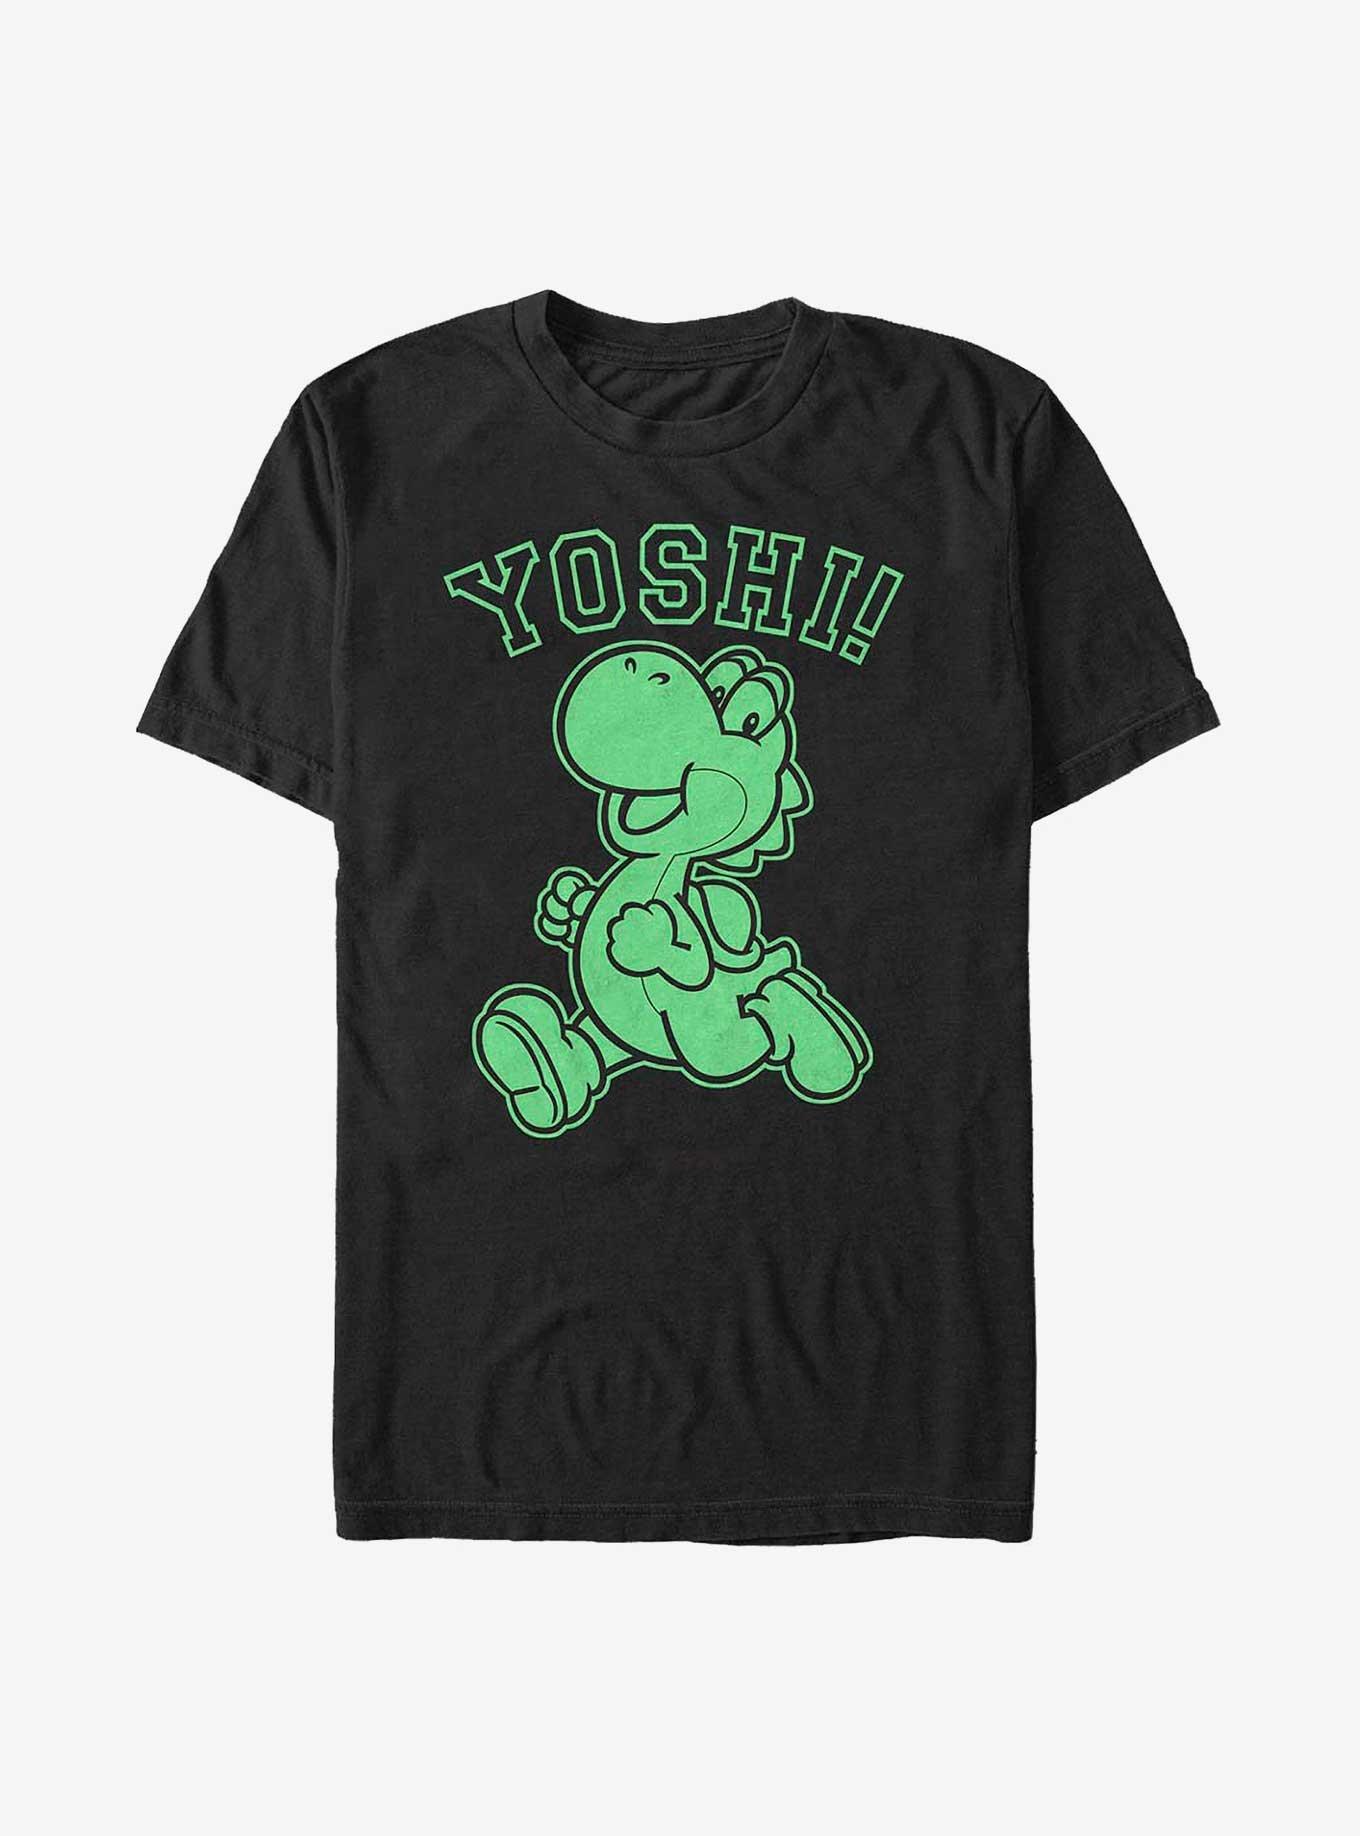 Nintendo Yoshi Green Yoshi T-Shirt, , hi-res